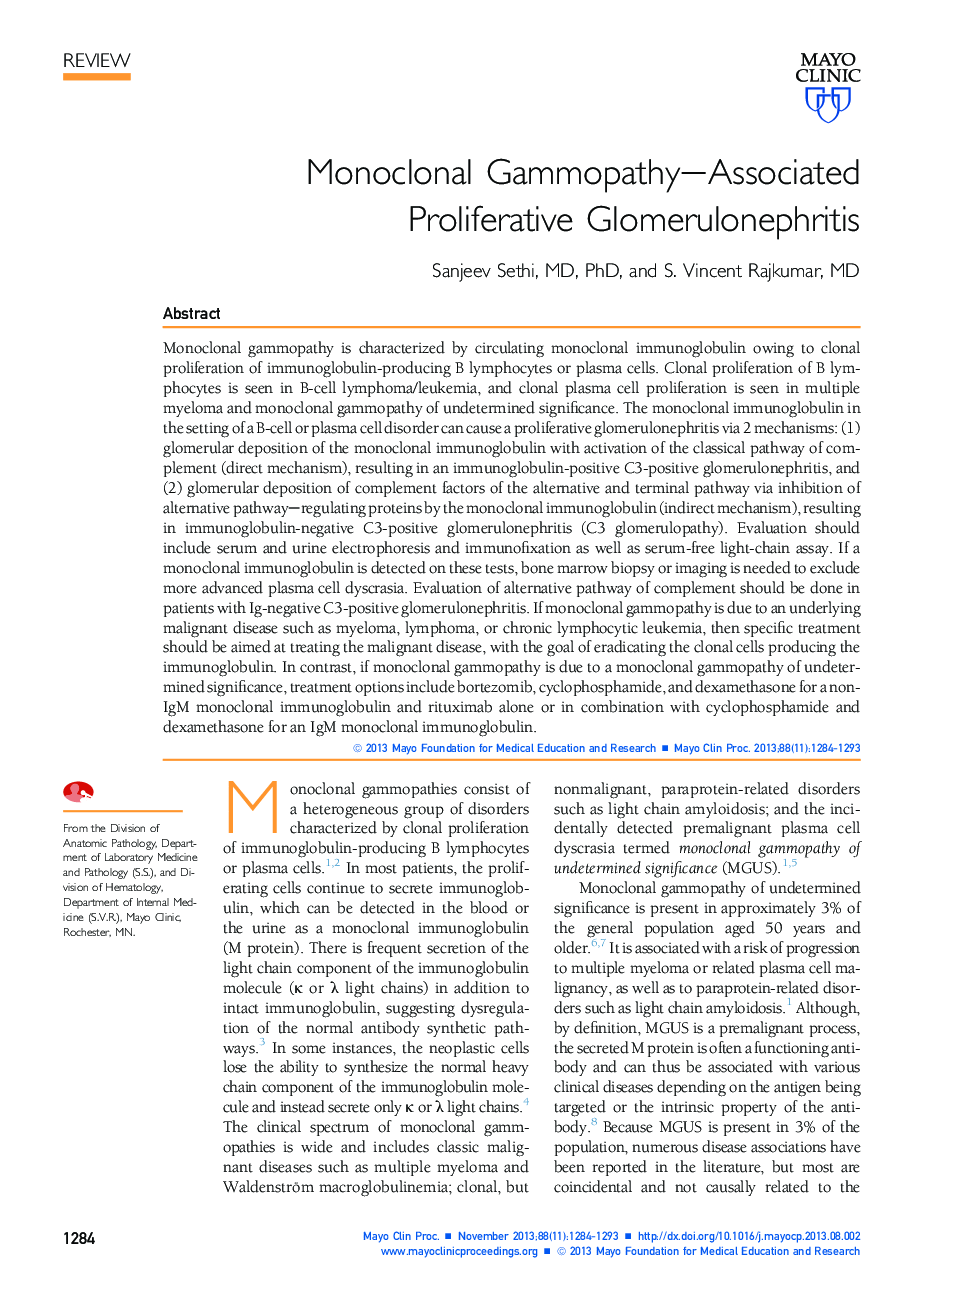 Monoclonal Gammopathy-Associated Proliferative Glomerulonephritis